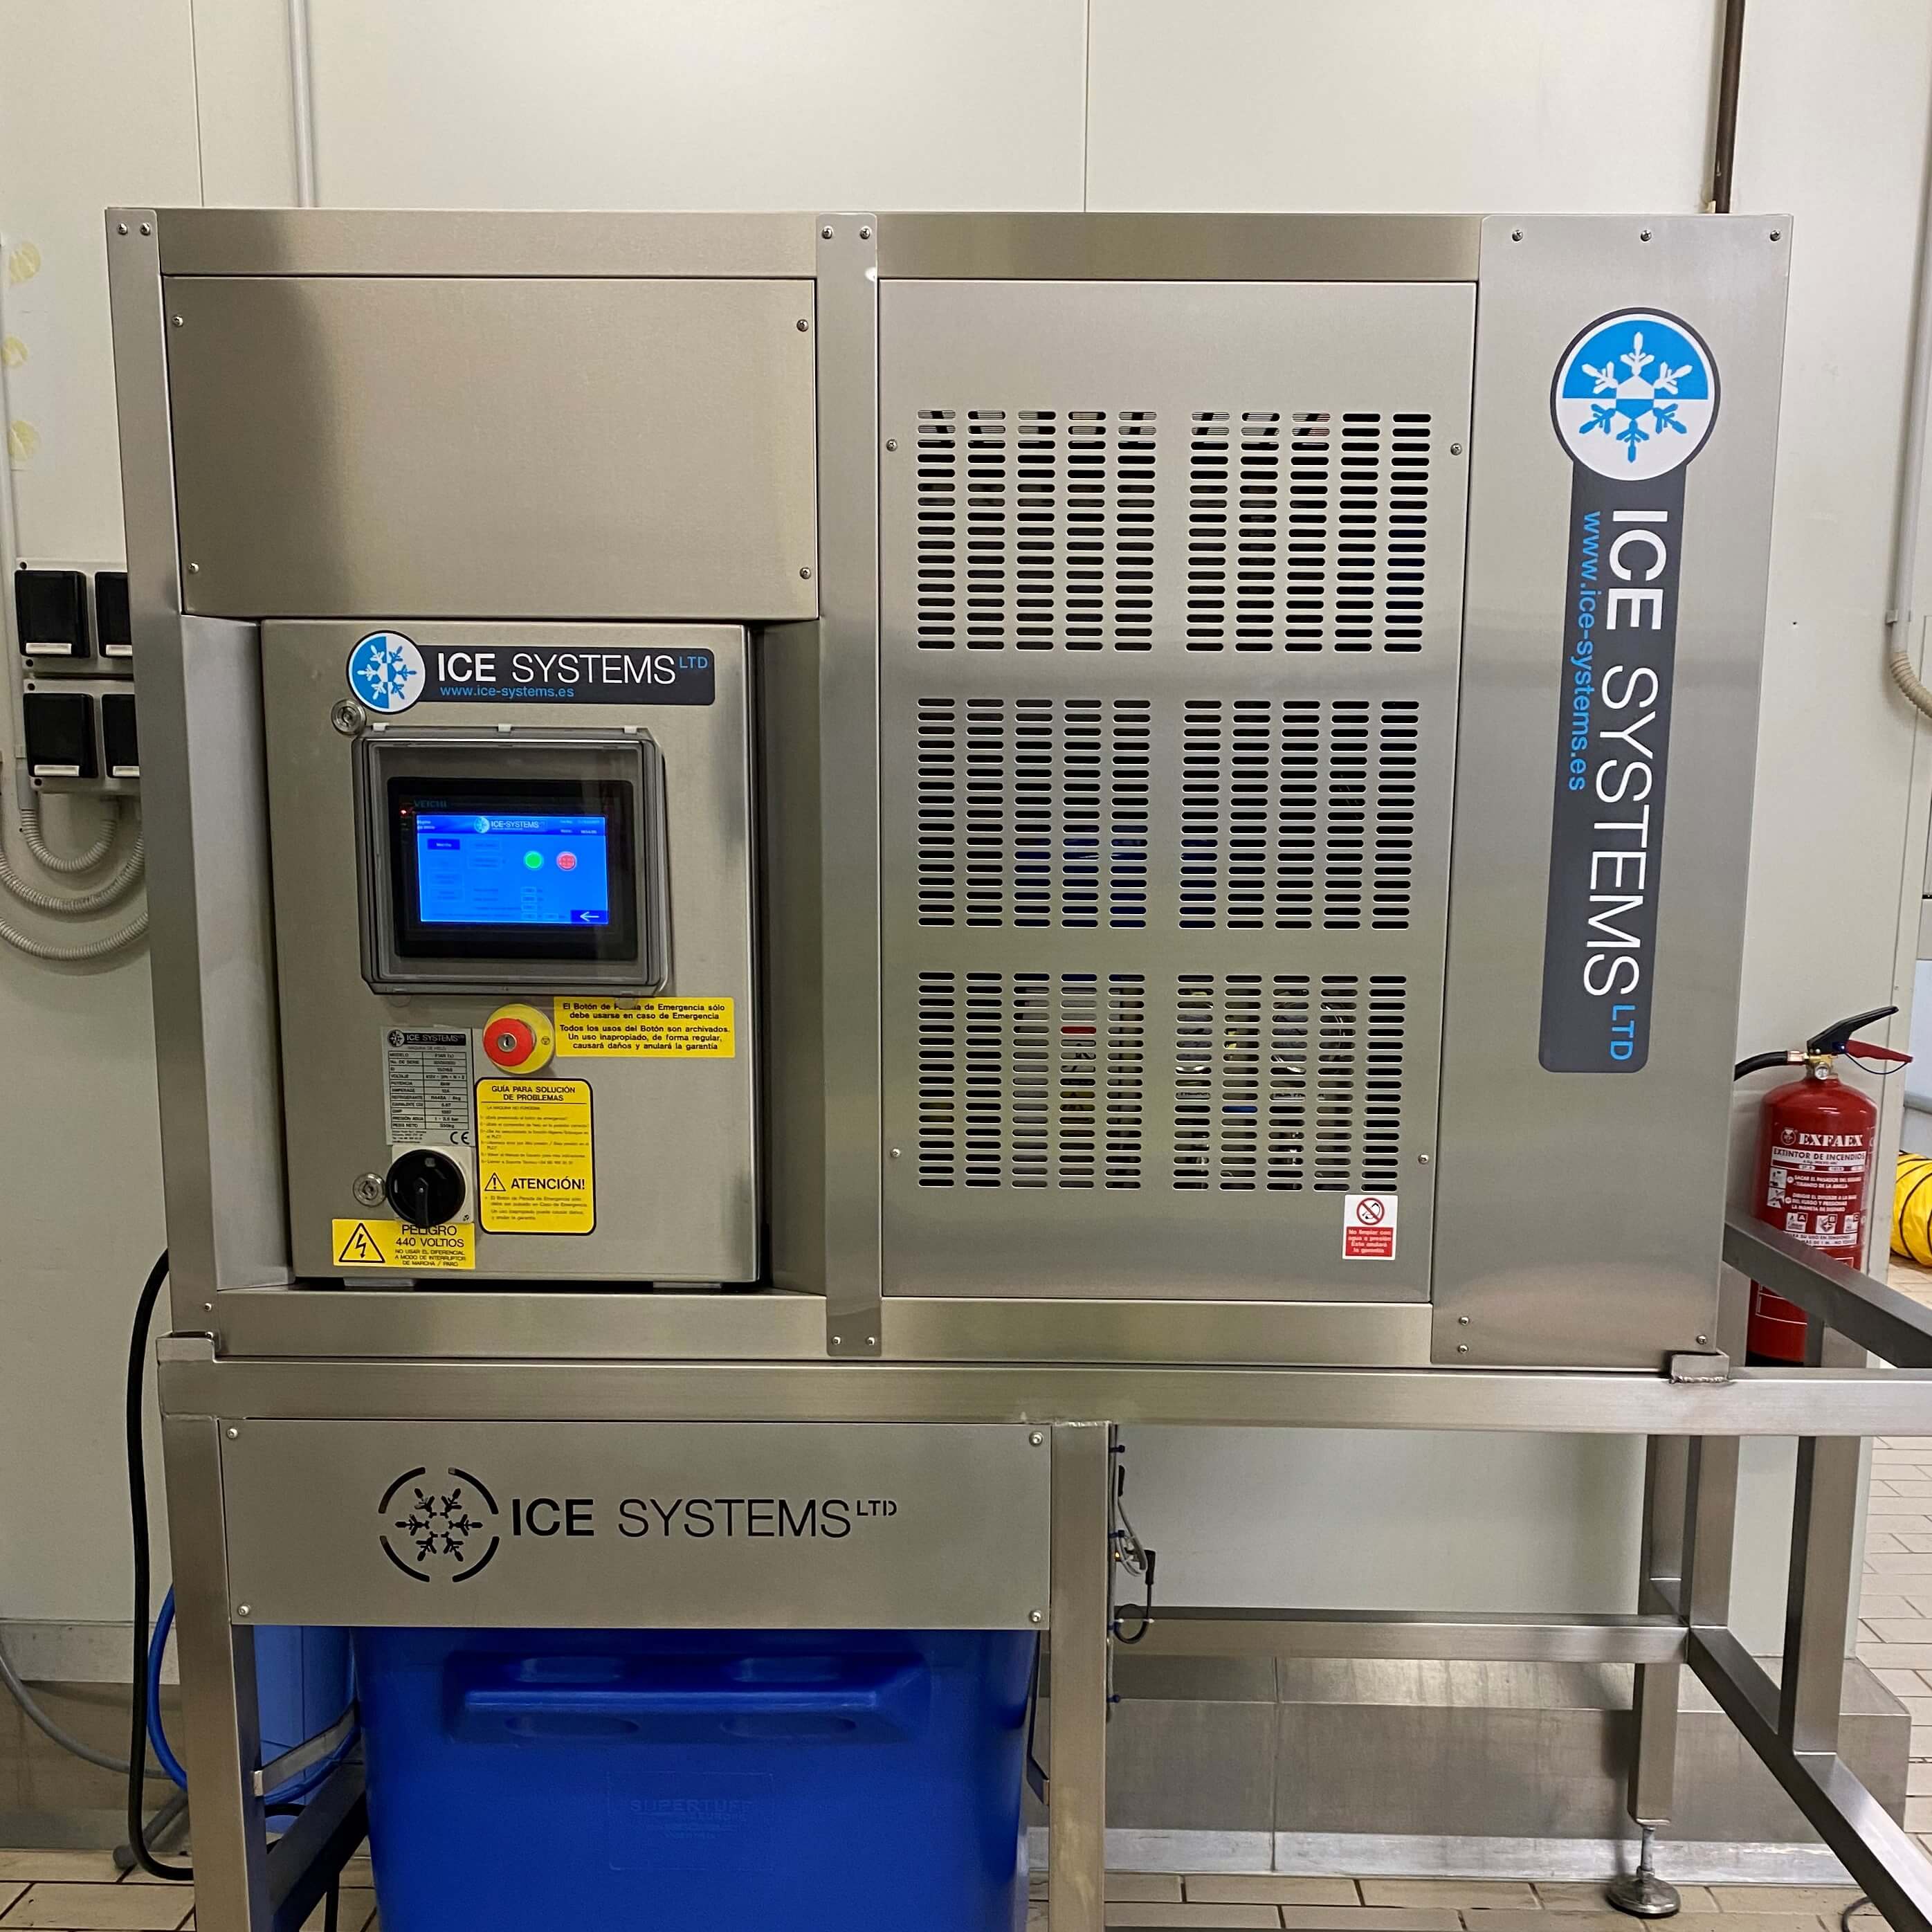 Instalación de nueva máquina de hielo en escamas en una panadería en España